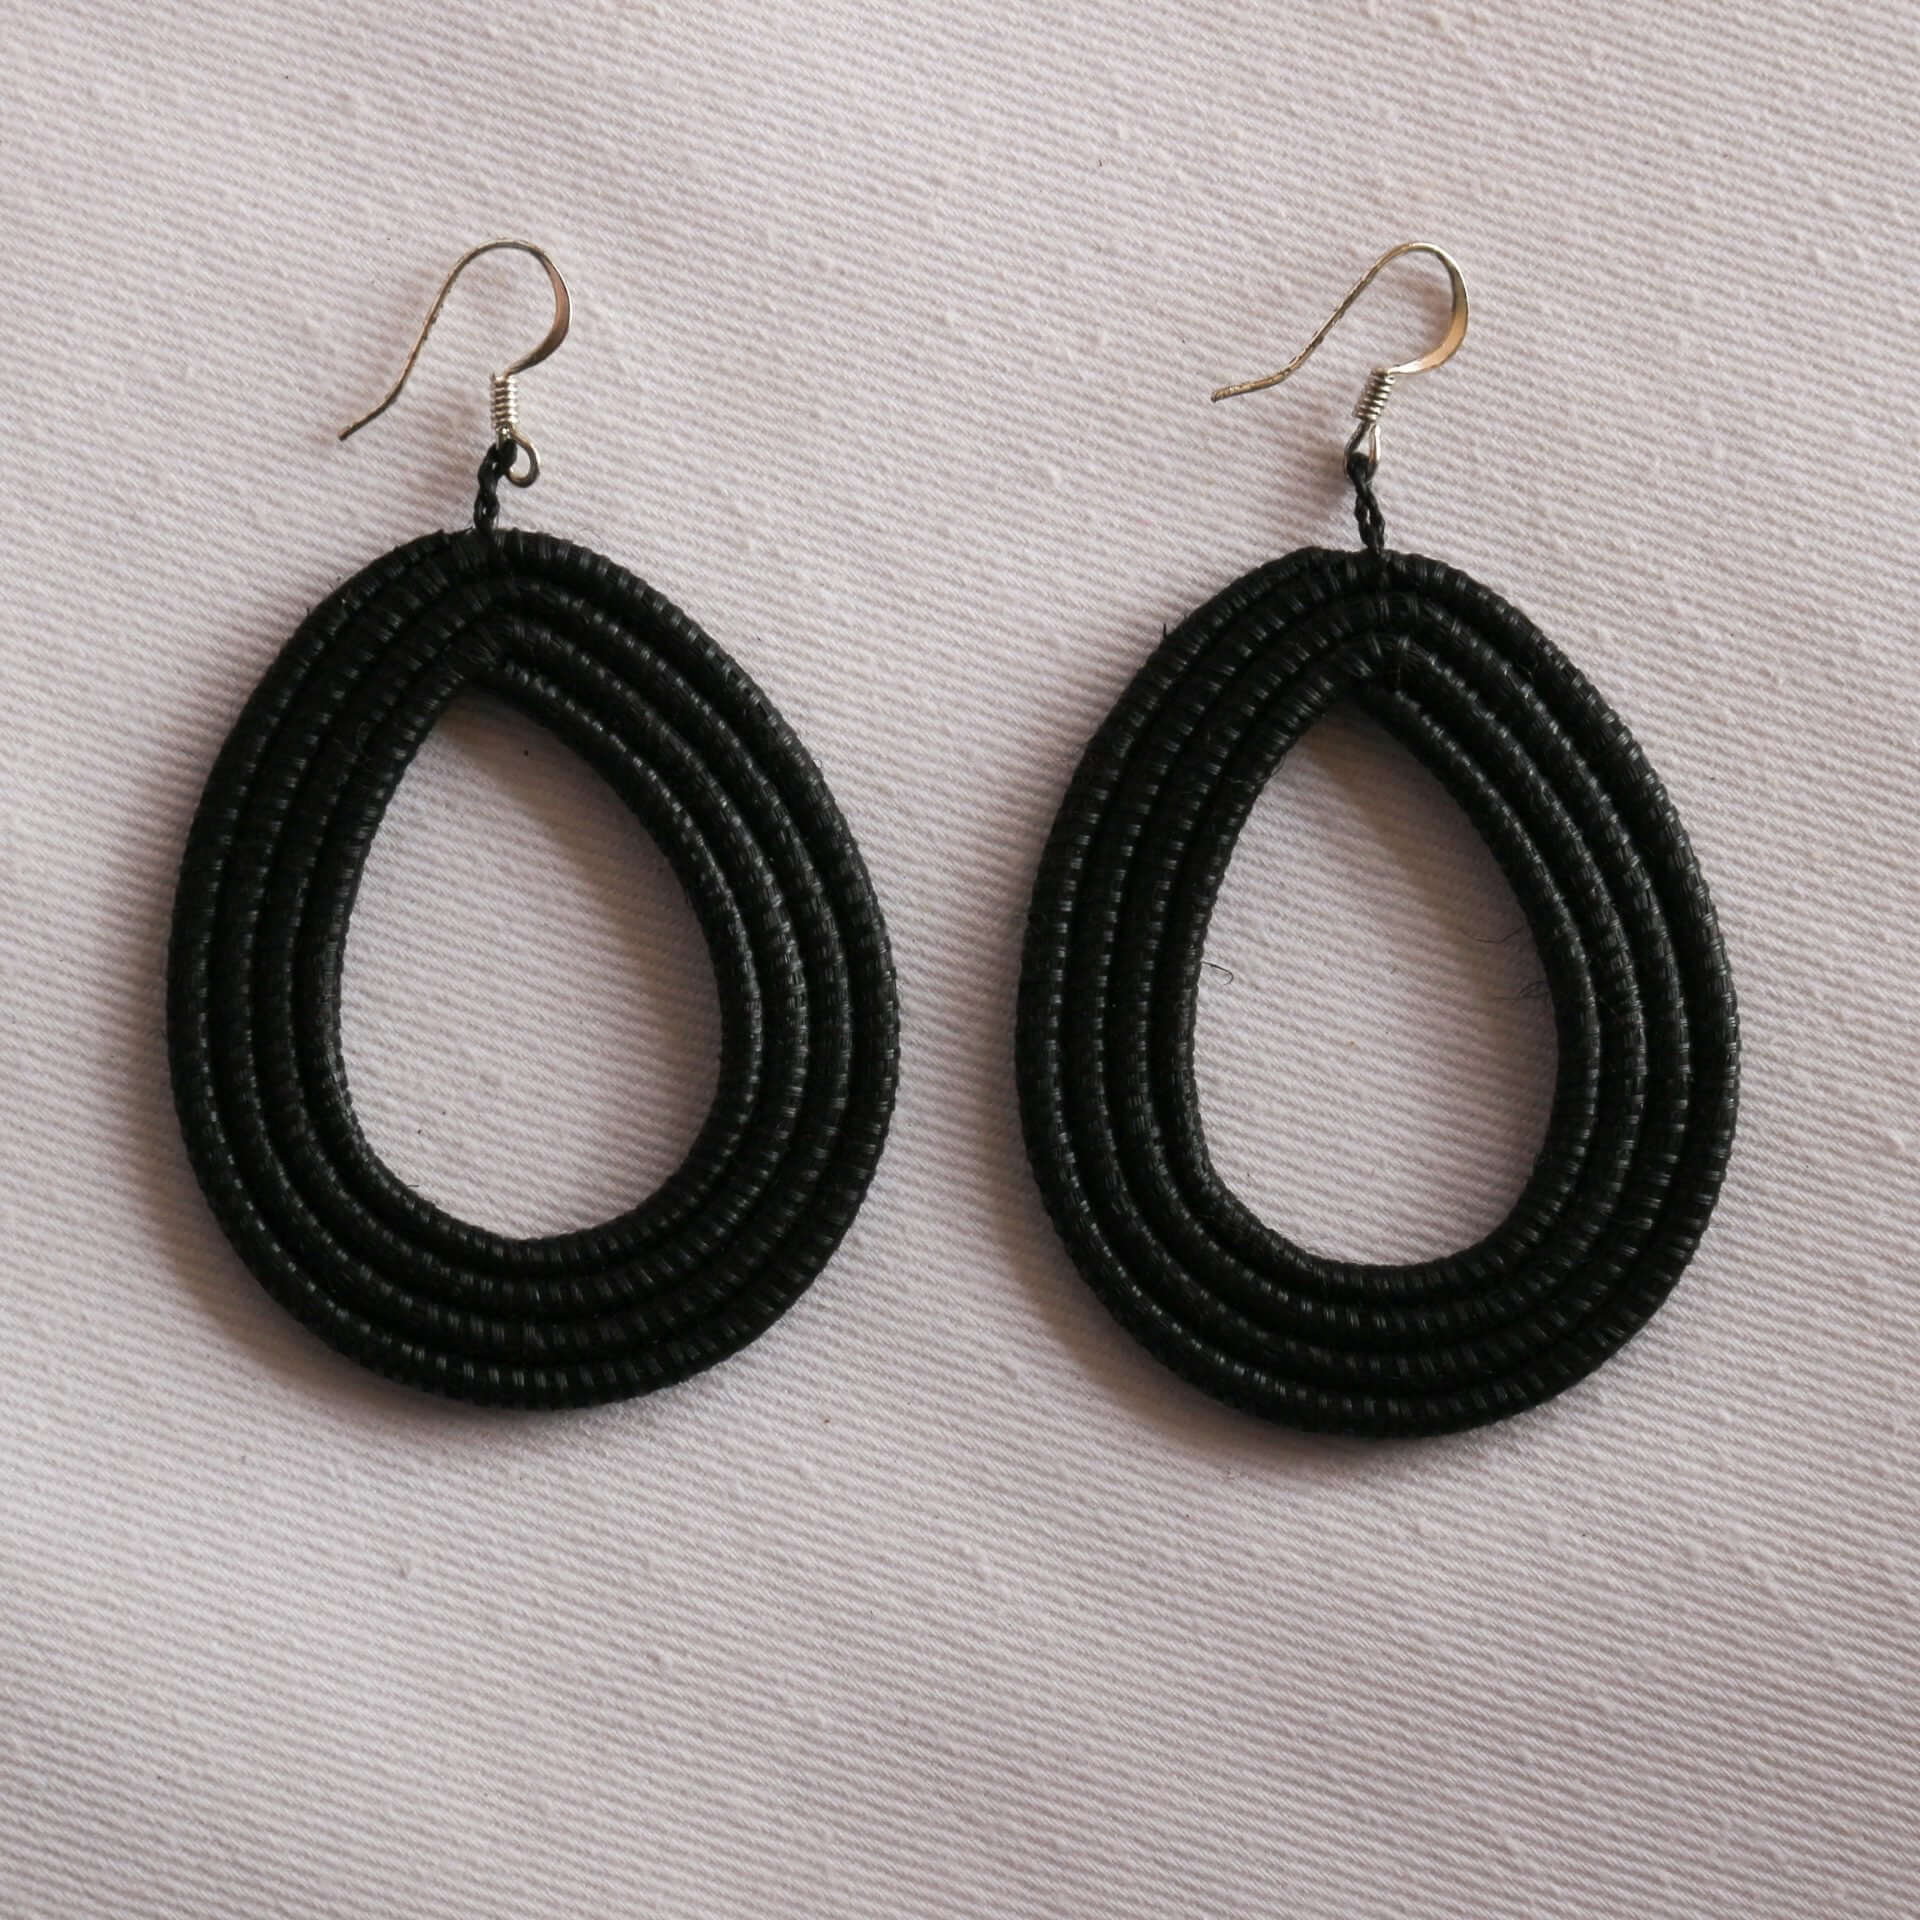 Handwoven Loop Earrings, Modern  and Beautiful Loop Earrings